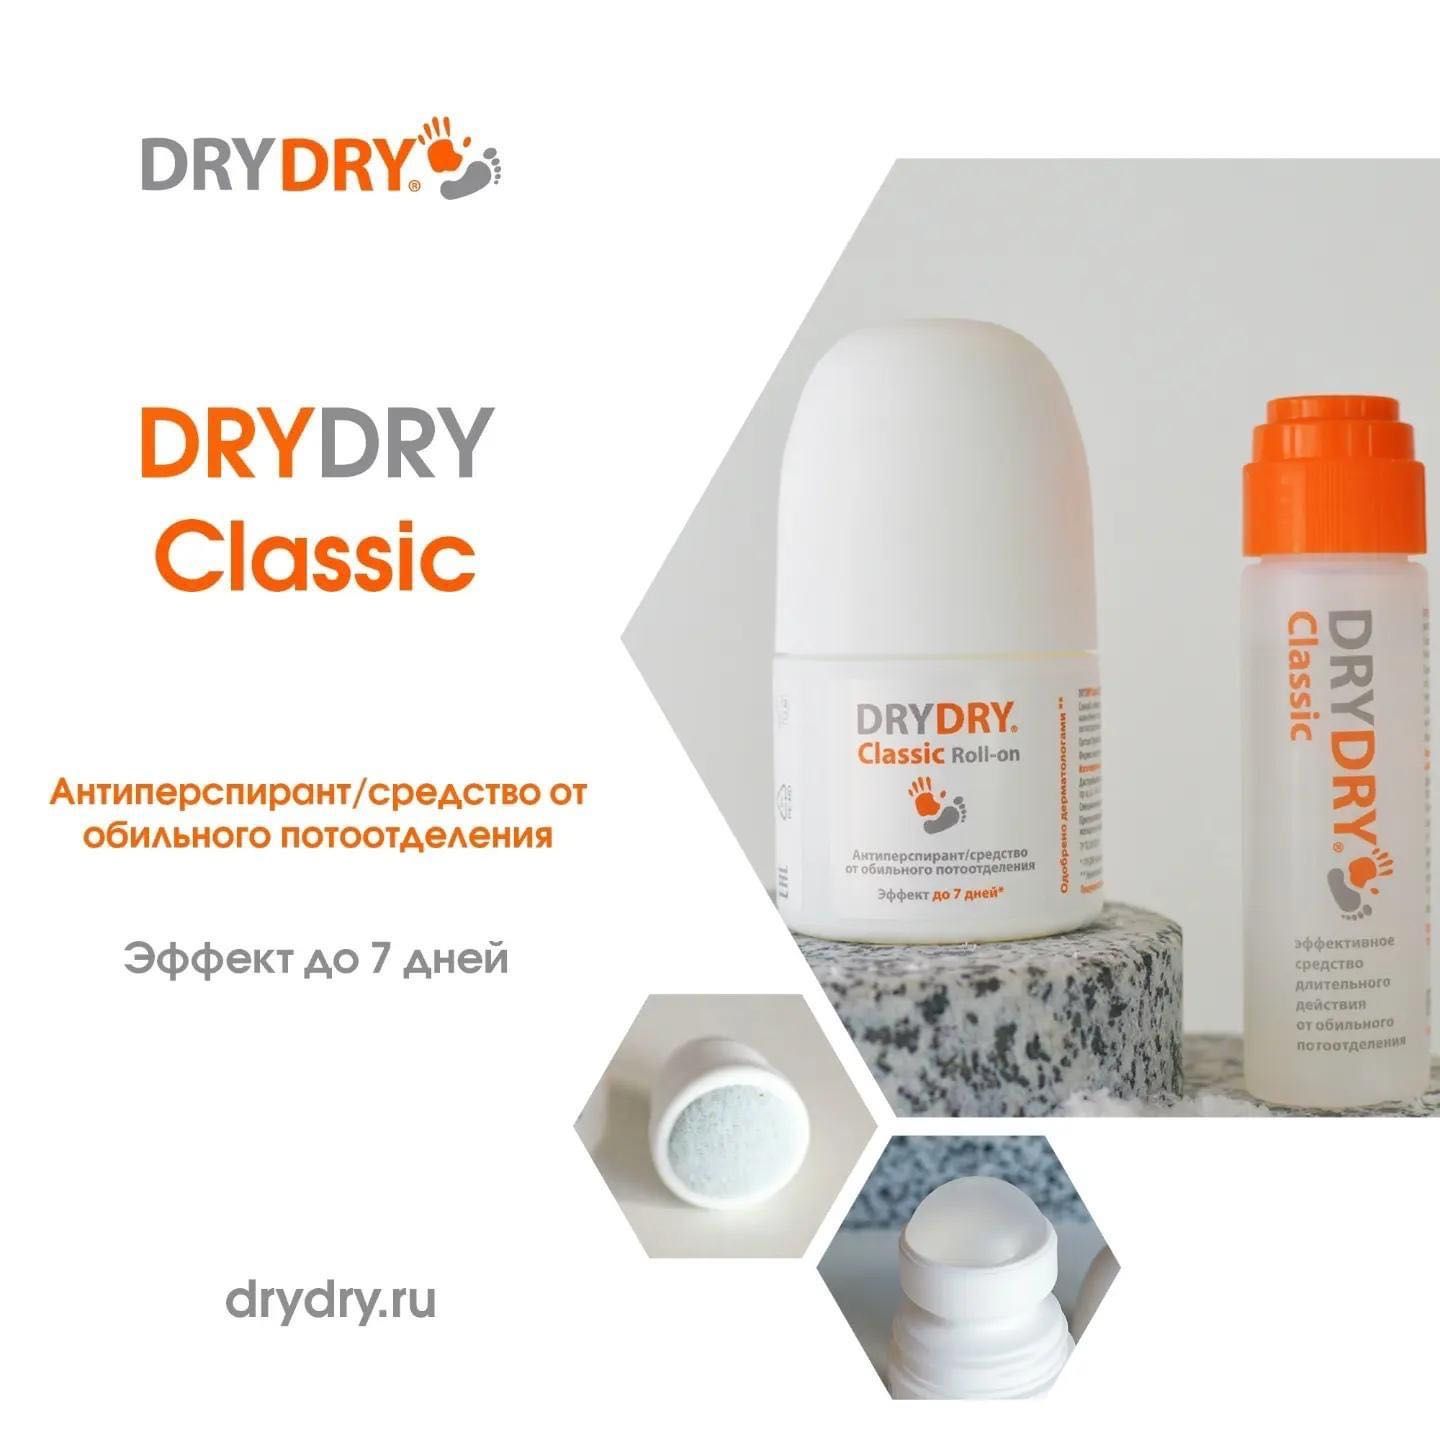 Antipersipant Dry dry